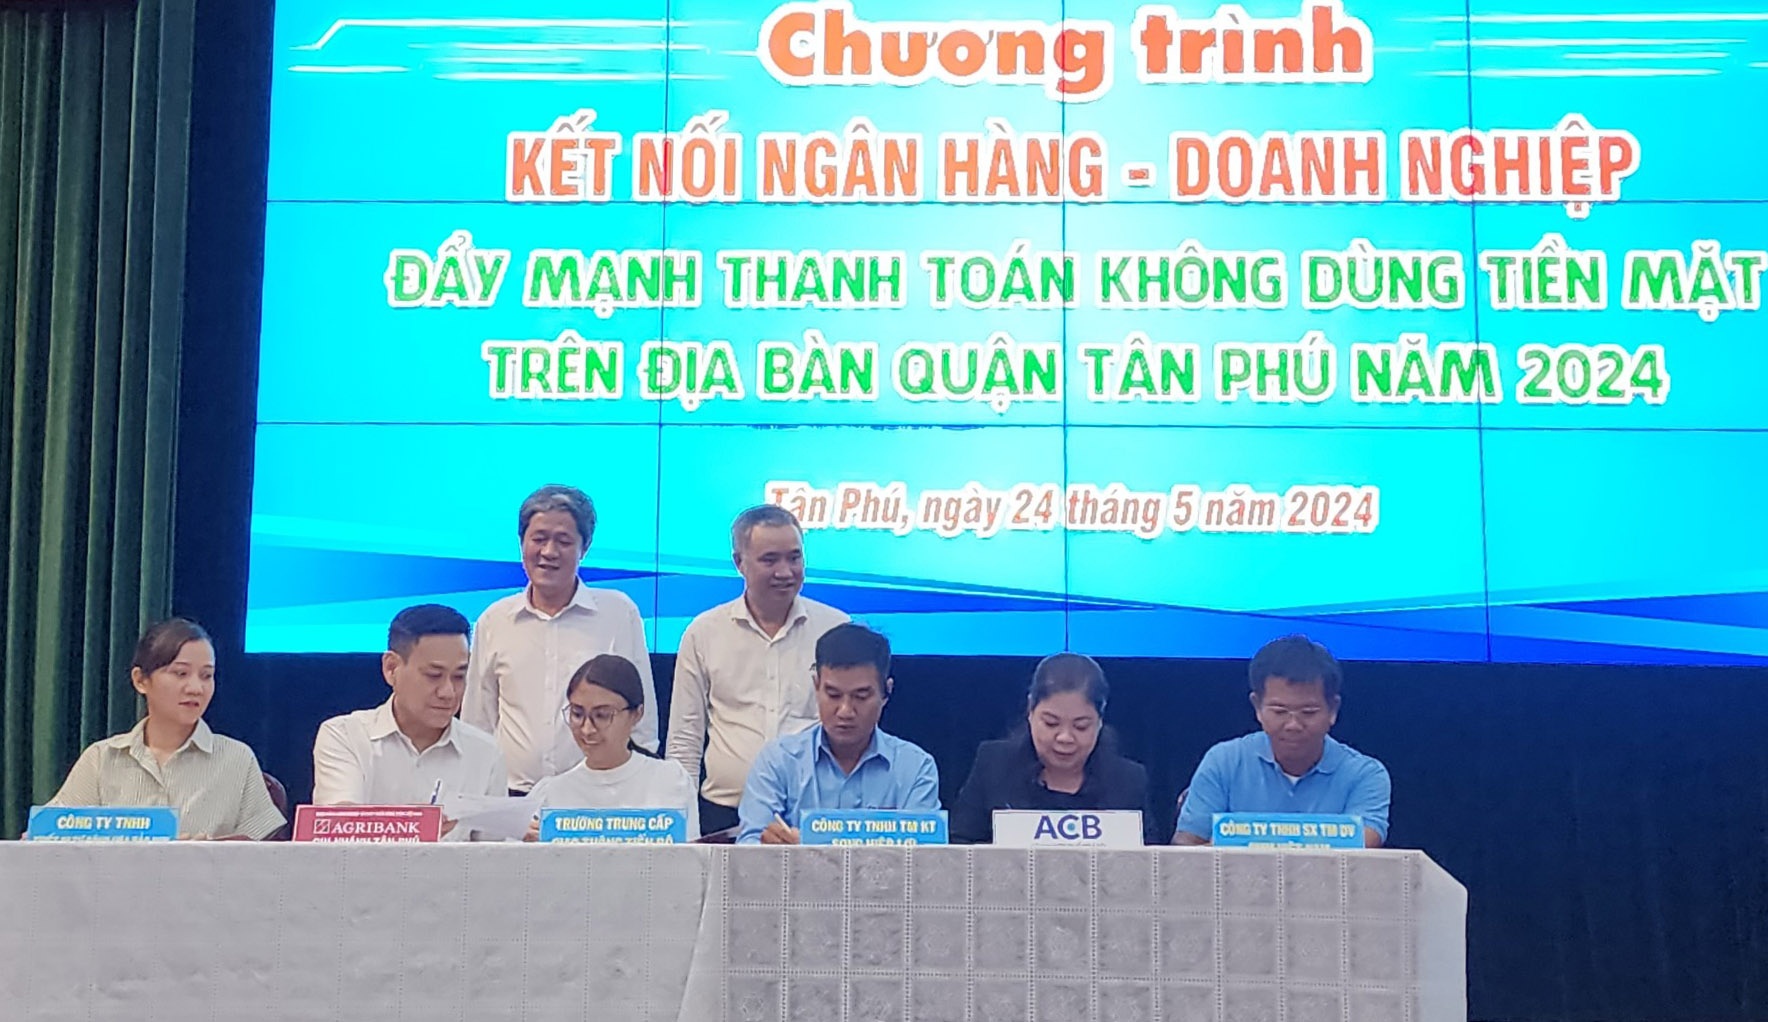 Chương trình kết nối ngân hàng – doanh nghiệp ở Quận Tân Phú (TP. Hồ Chí Minh) tập trung vào phát triển thanh toán không dùng tiền mặt - Ảnh: Đ.Thịnh